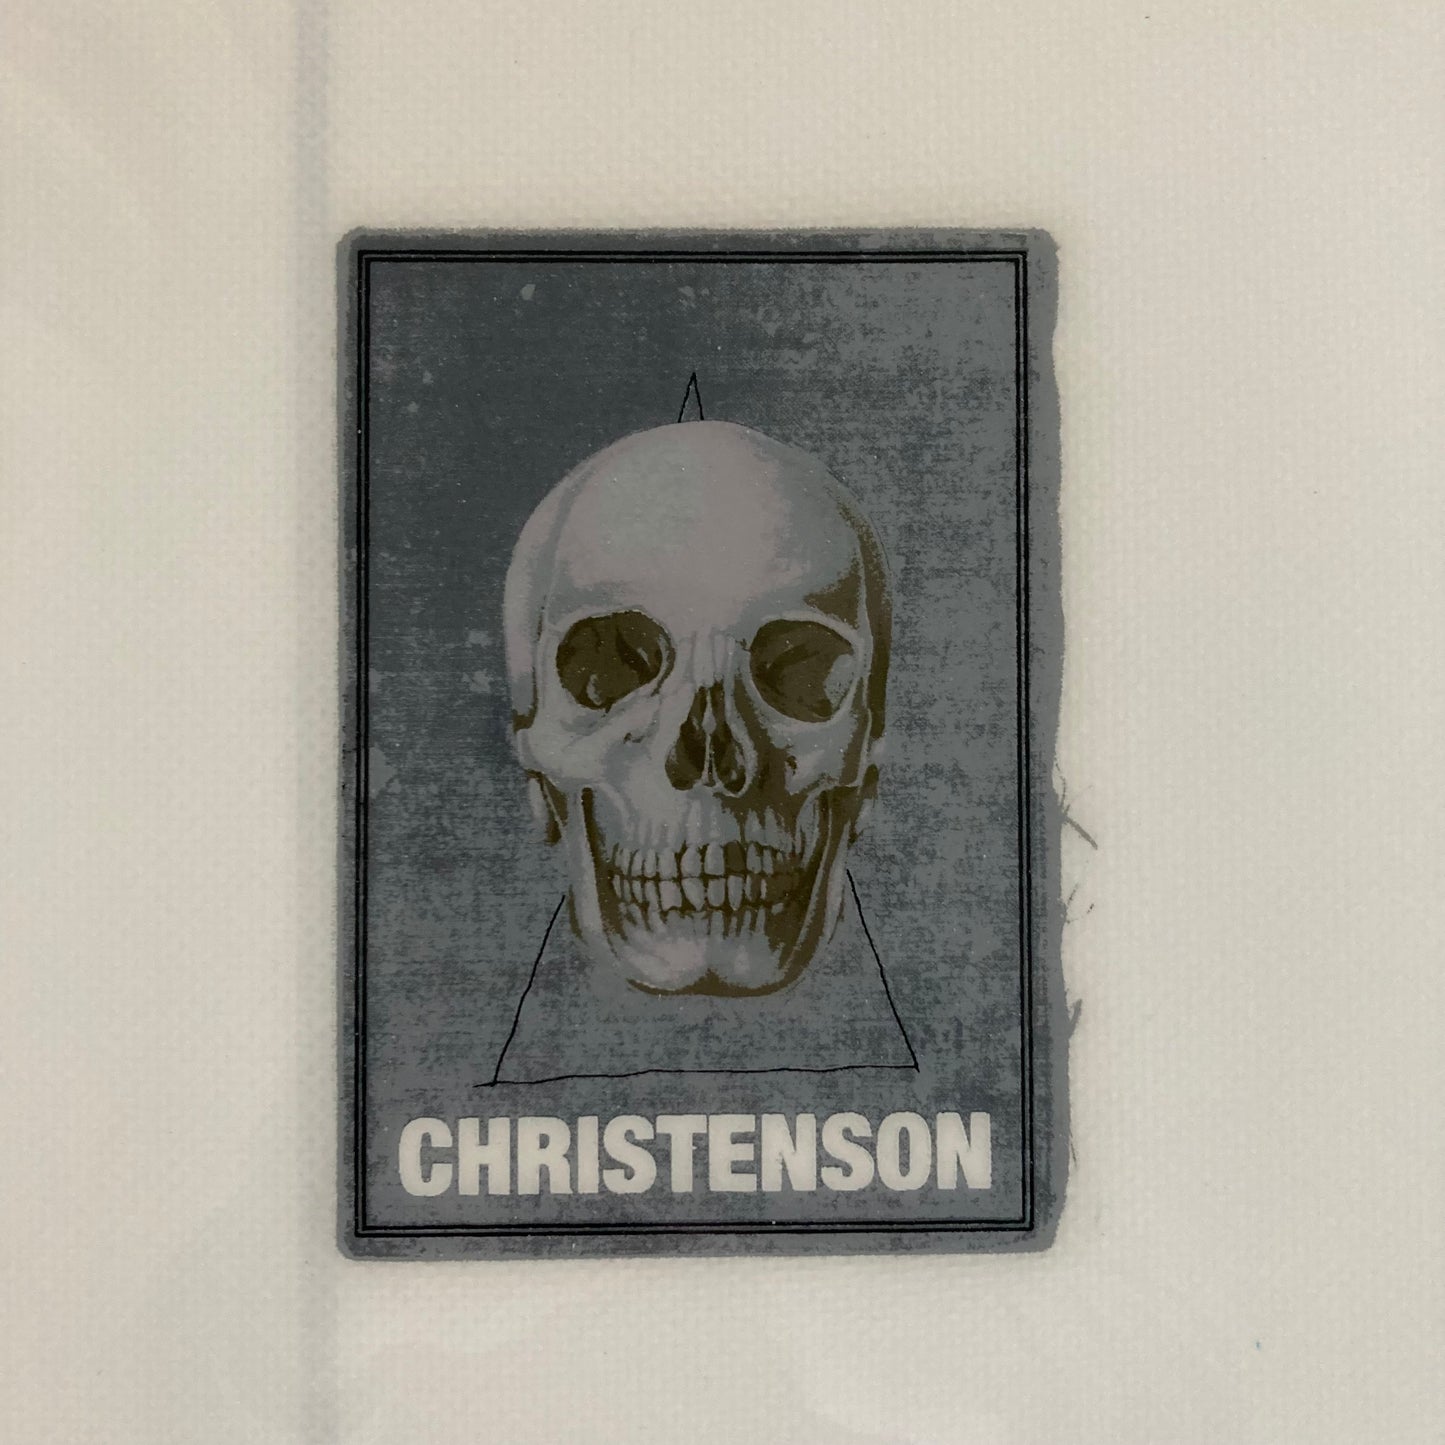 Christenson - 6'0 Lane Splitter